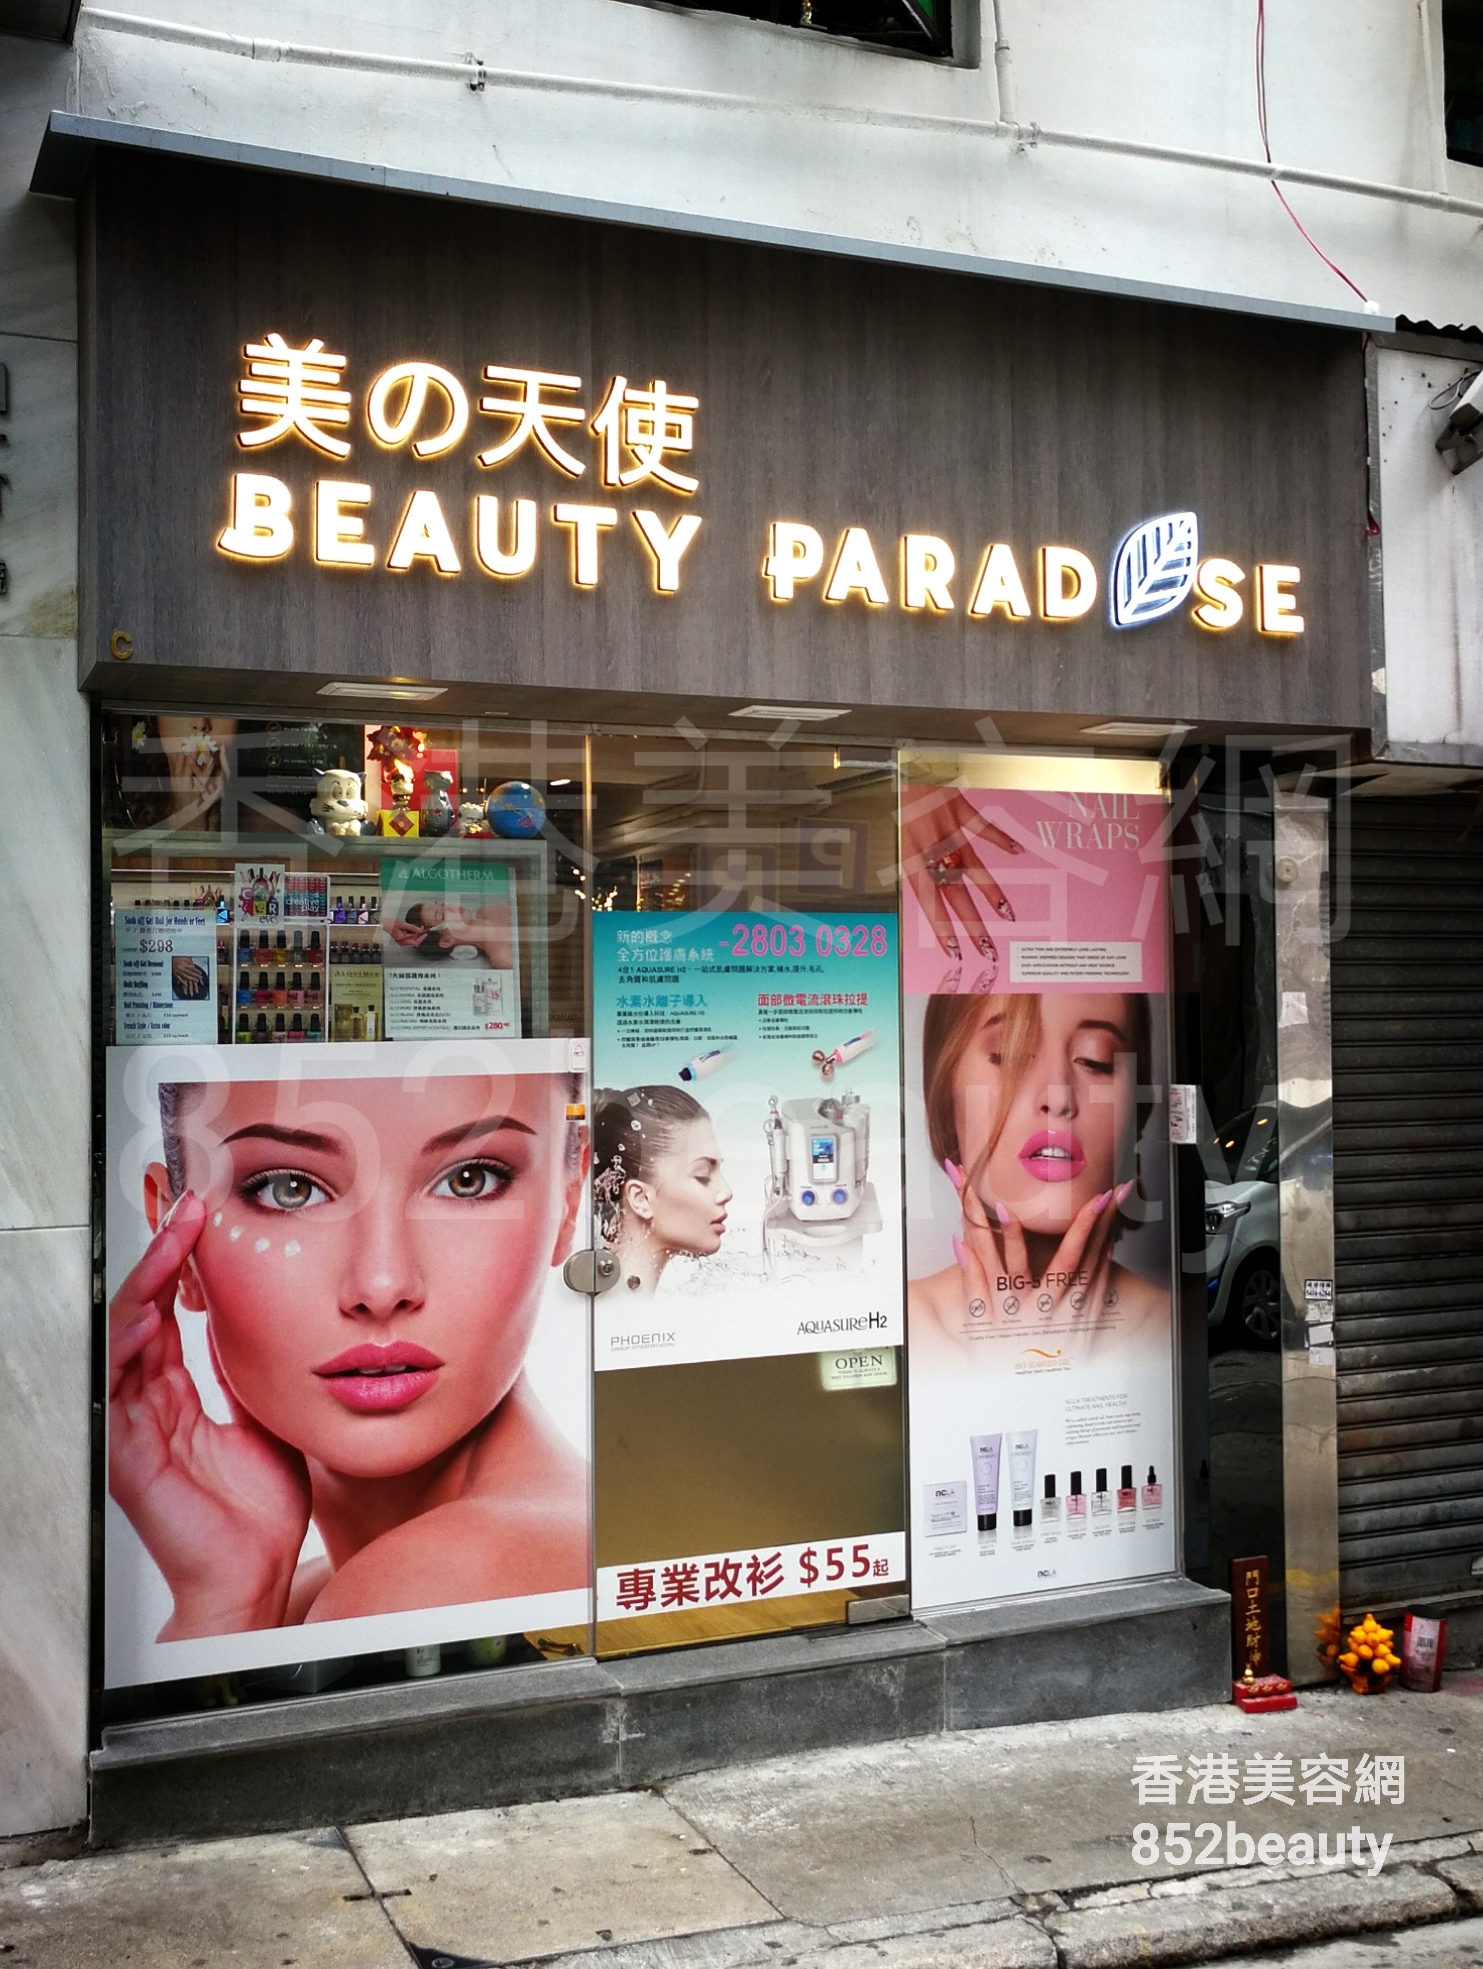 香港美容網 Hong Kong Beauty Salon 美容院 / 美容師: 美之天使 BEAUTY PARADSE 